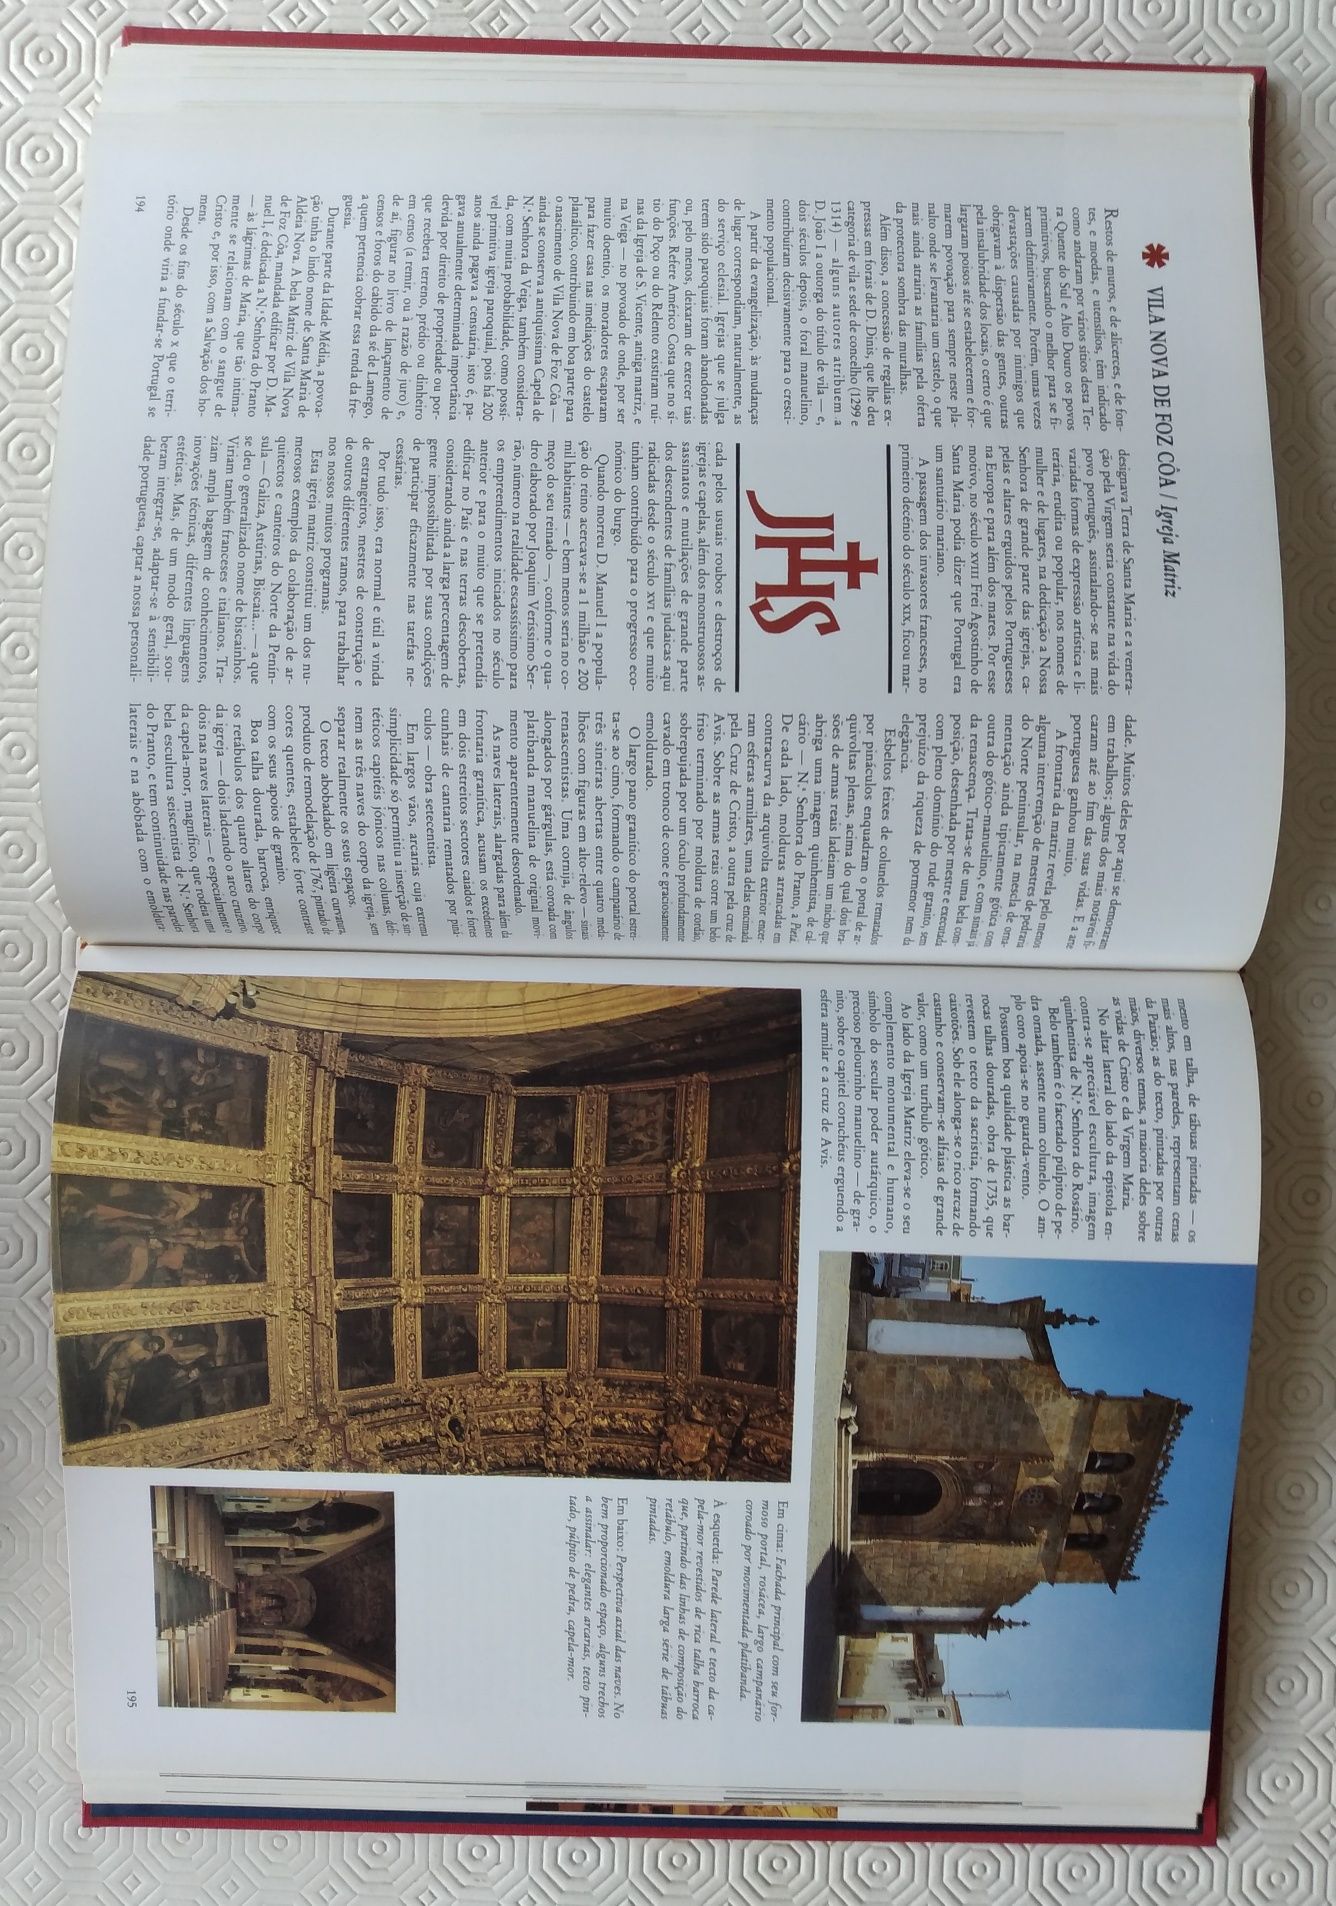 Igrejas de Portugal - 2 livros usados